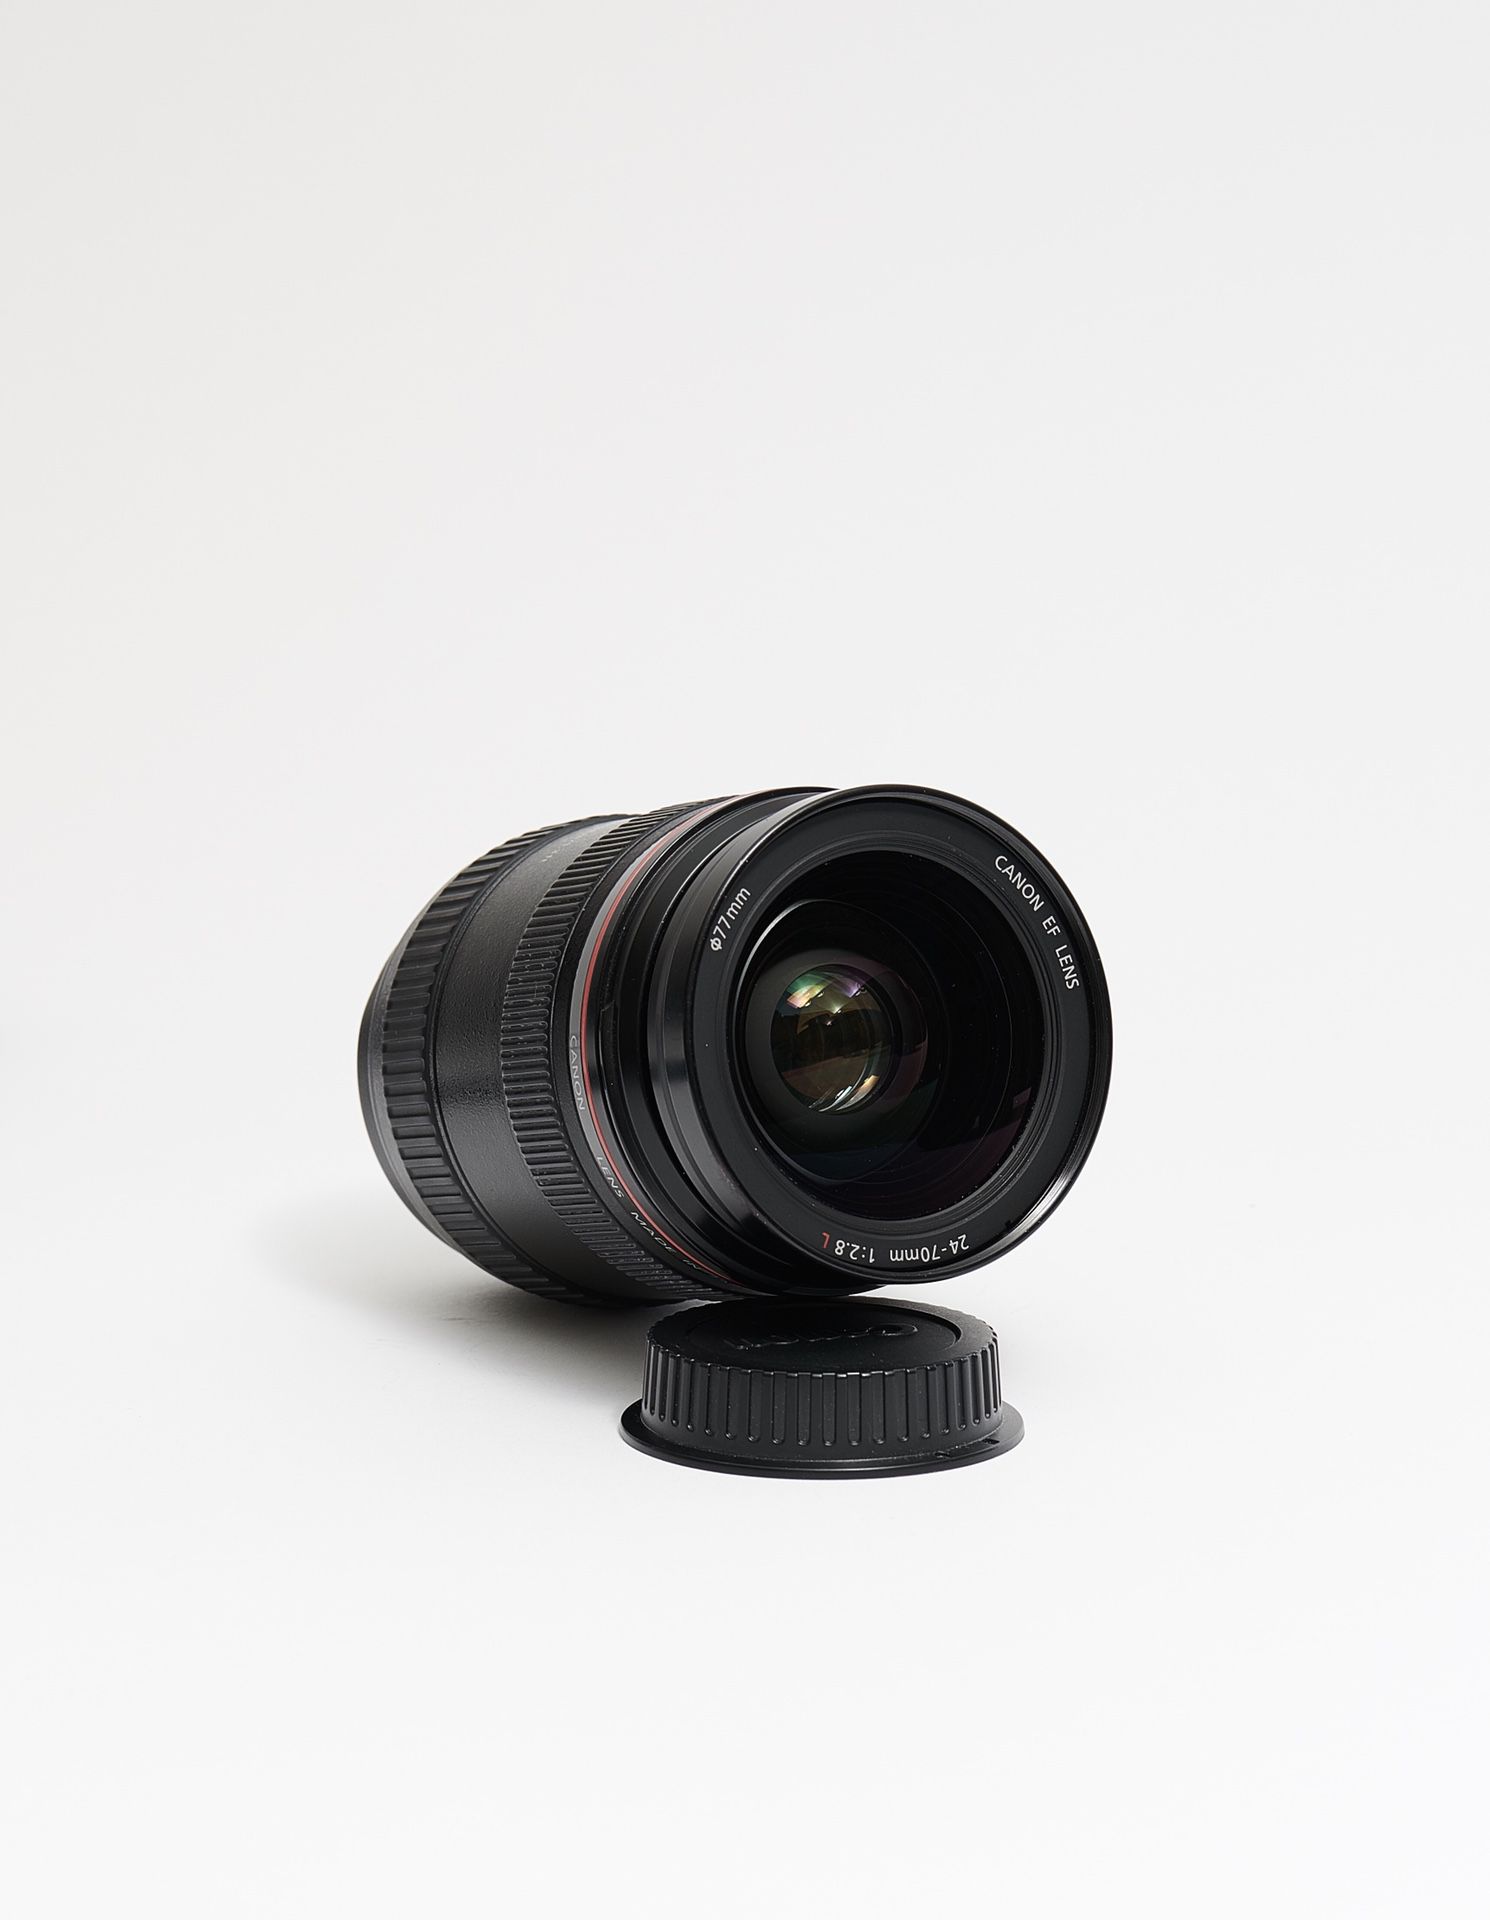 Canon 24-70mm f/4L IS USM Lens for Digital SLR DSLR Cameras Bodies